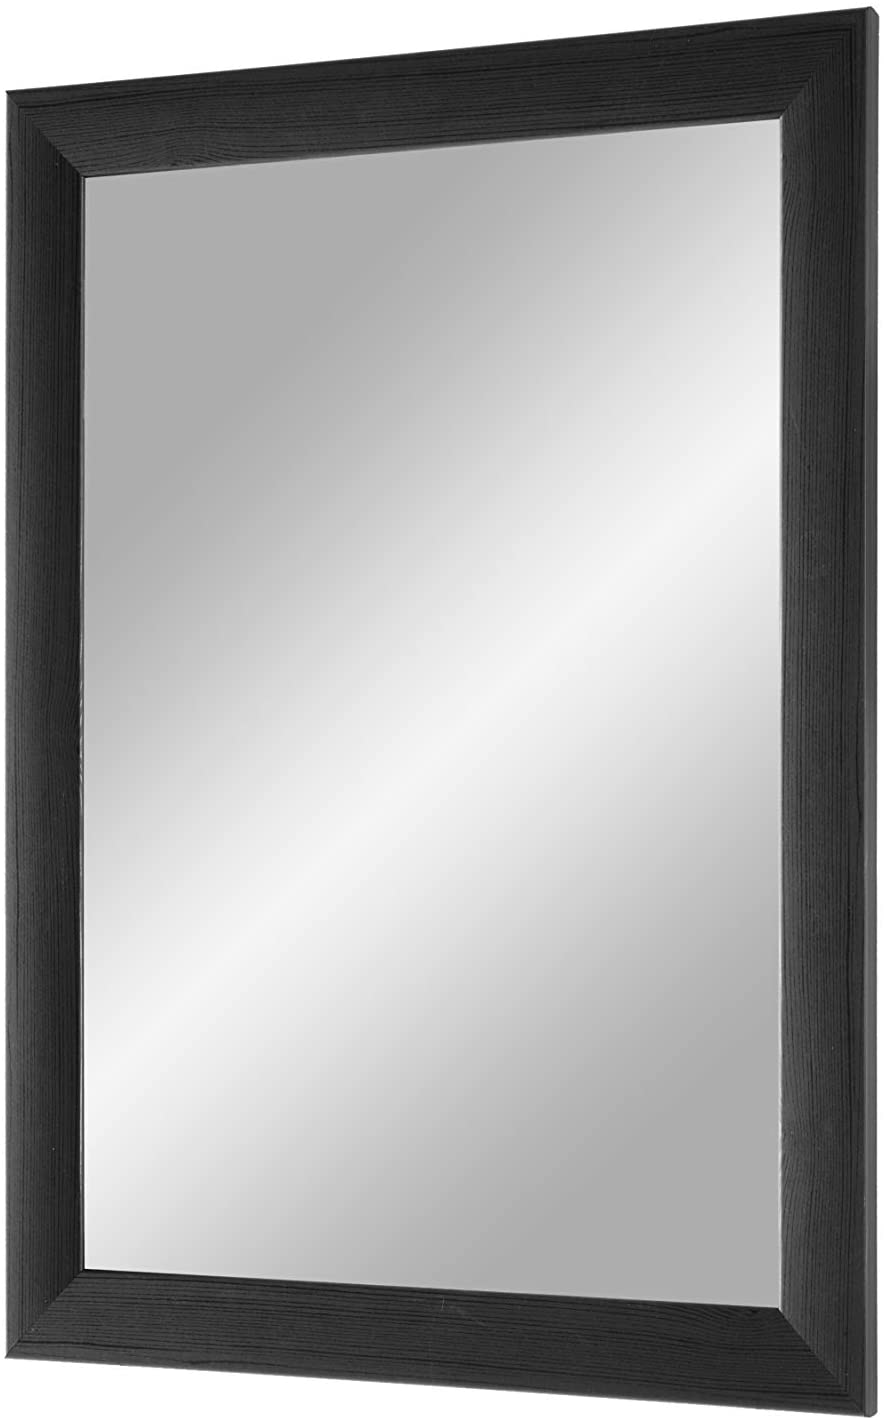 EXCLUSIV Wandspiegel nach Maß (Kiefer-Schwarz), Maßgefertigter Spiegelrahmen inkl. Spiegel und stabiler Rückwand mit Aufhängern